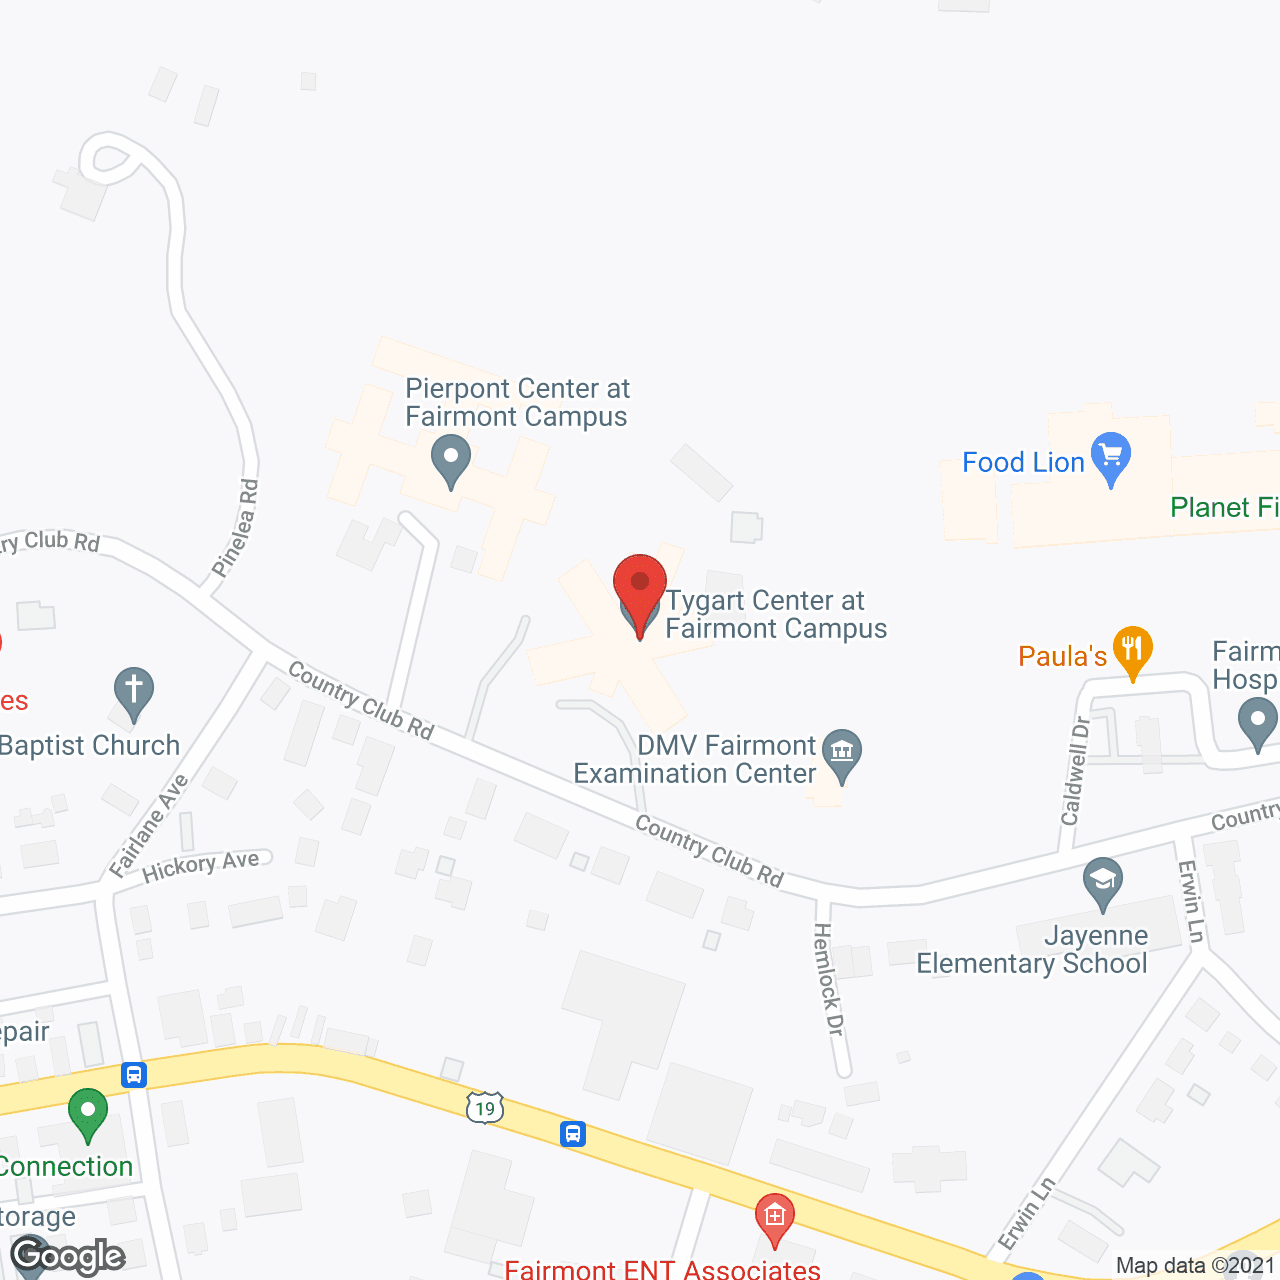 Pierpont Center in google map